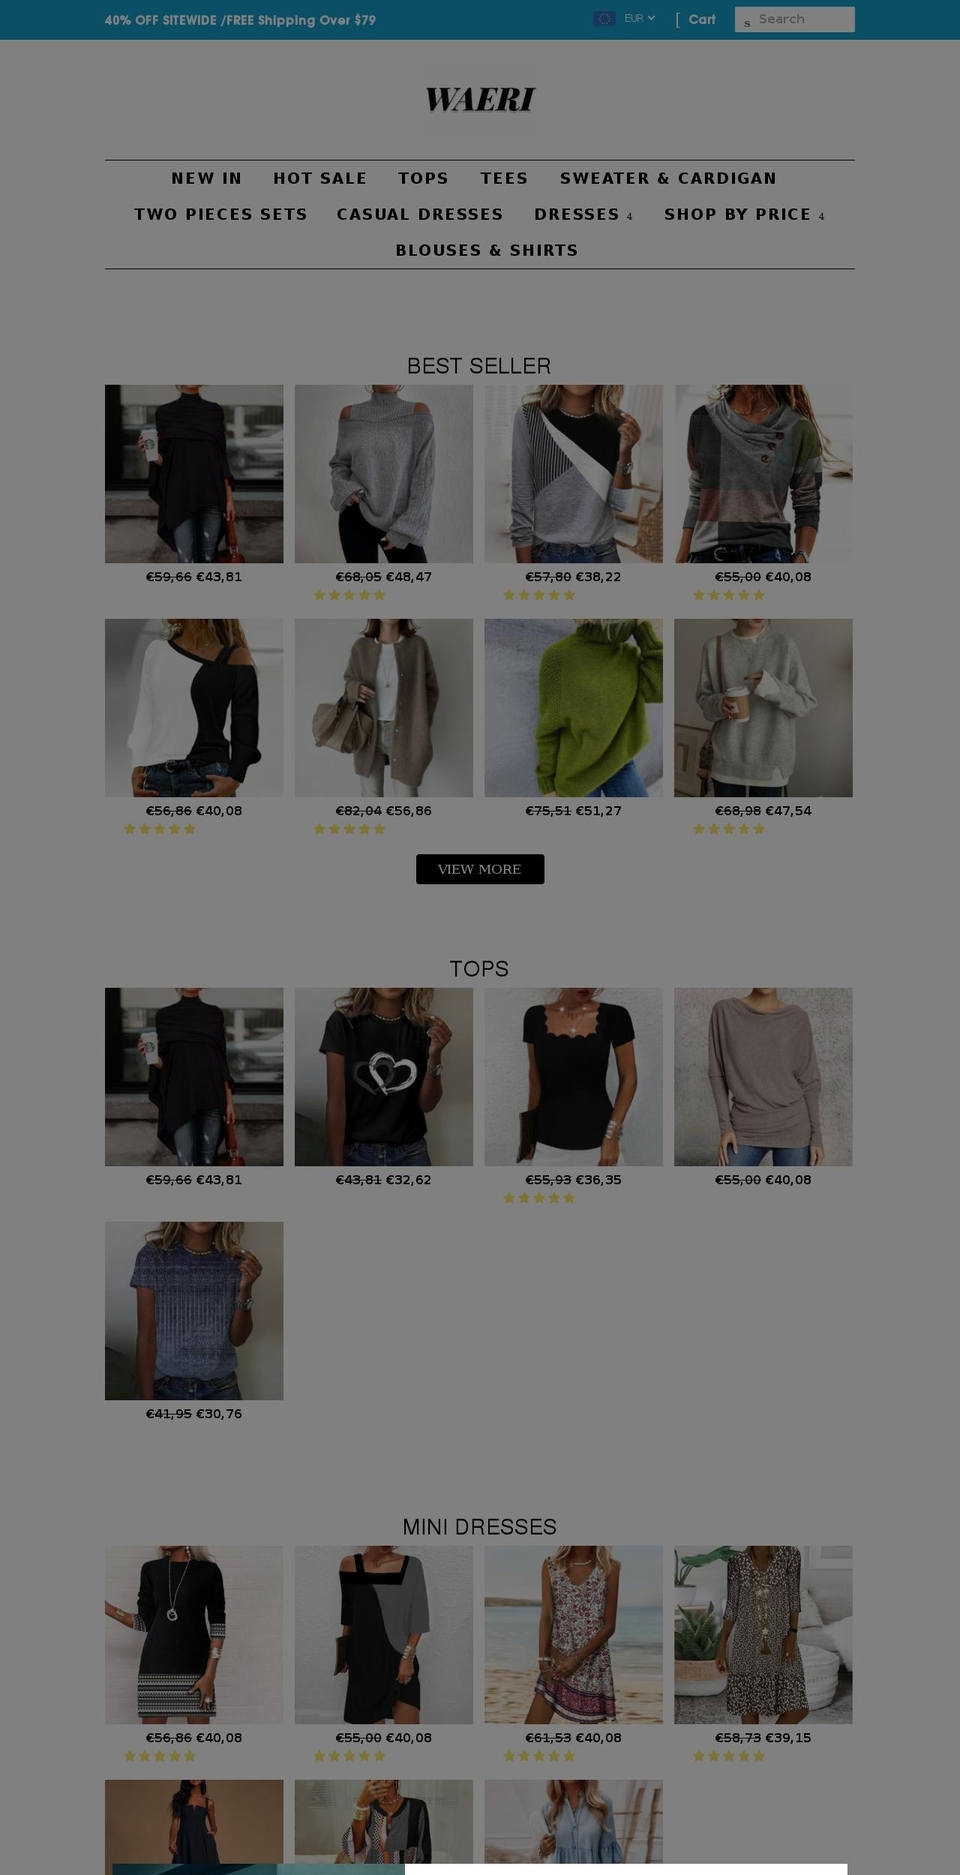 V Shopify theme site example waeri.com